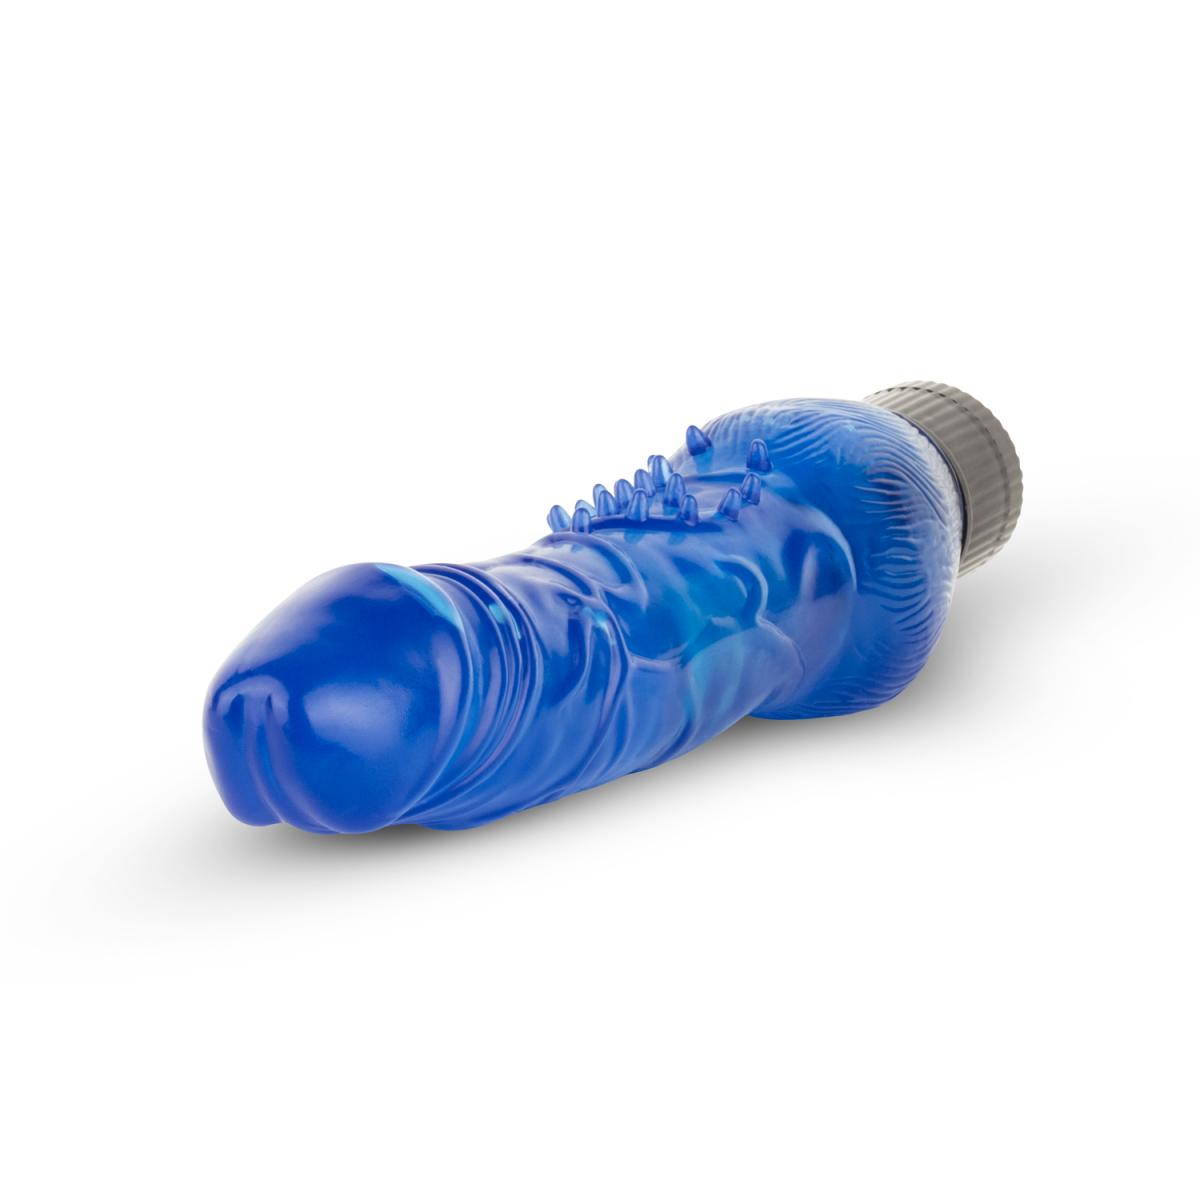 Transparant blauwe virbrator van het merk EasyToys. Geschikt voor de gevorderde gebruiker. EasyToys vibrators koop je bij Flavourez